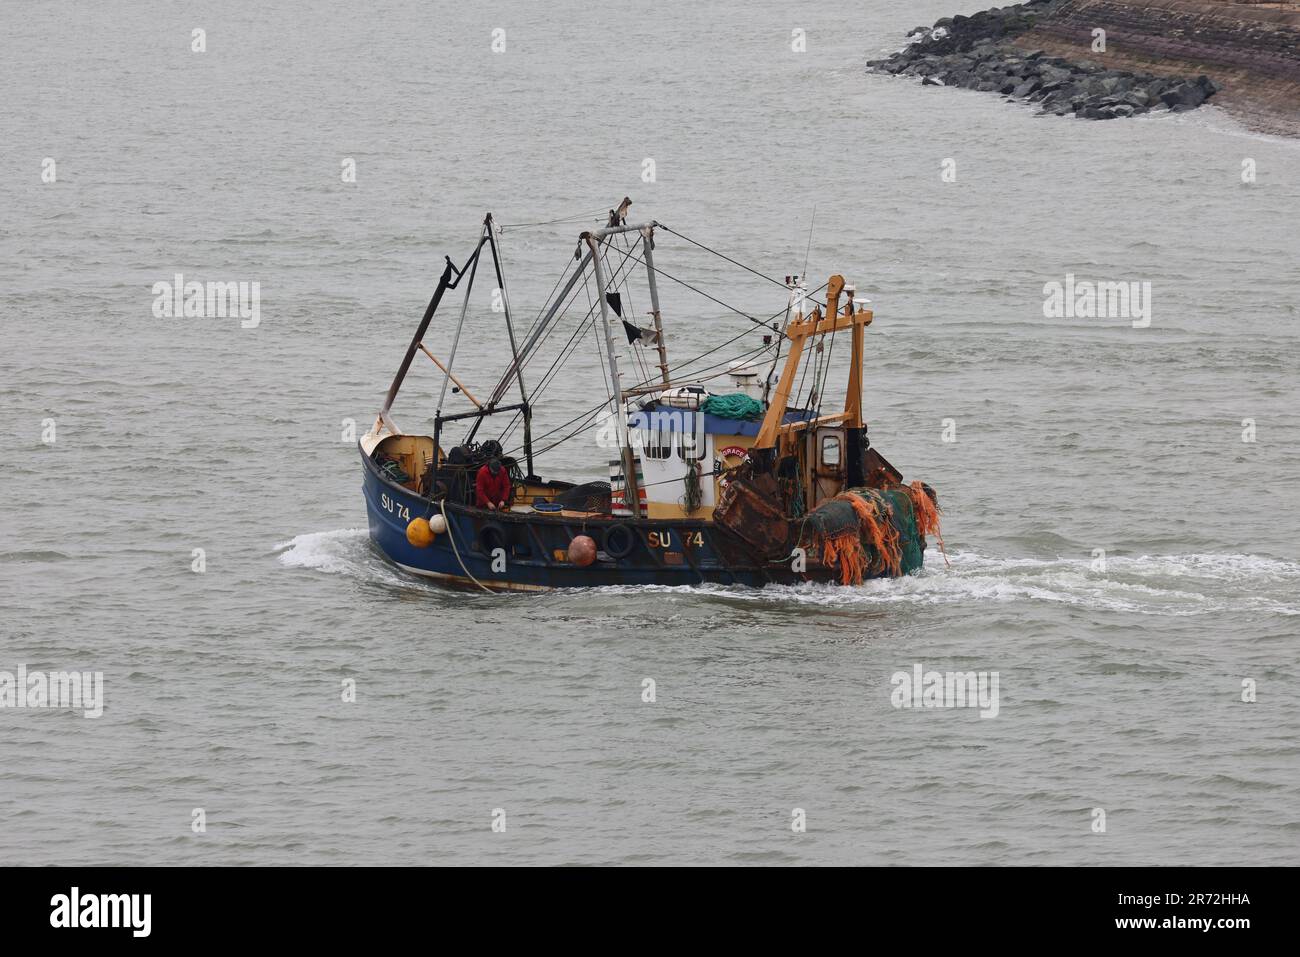 La nave da pesca a scafo d'acciaio con sede a Southampton GRAZIA OLIVIA (SU74) Foto Stock